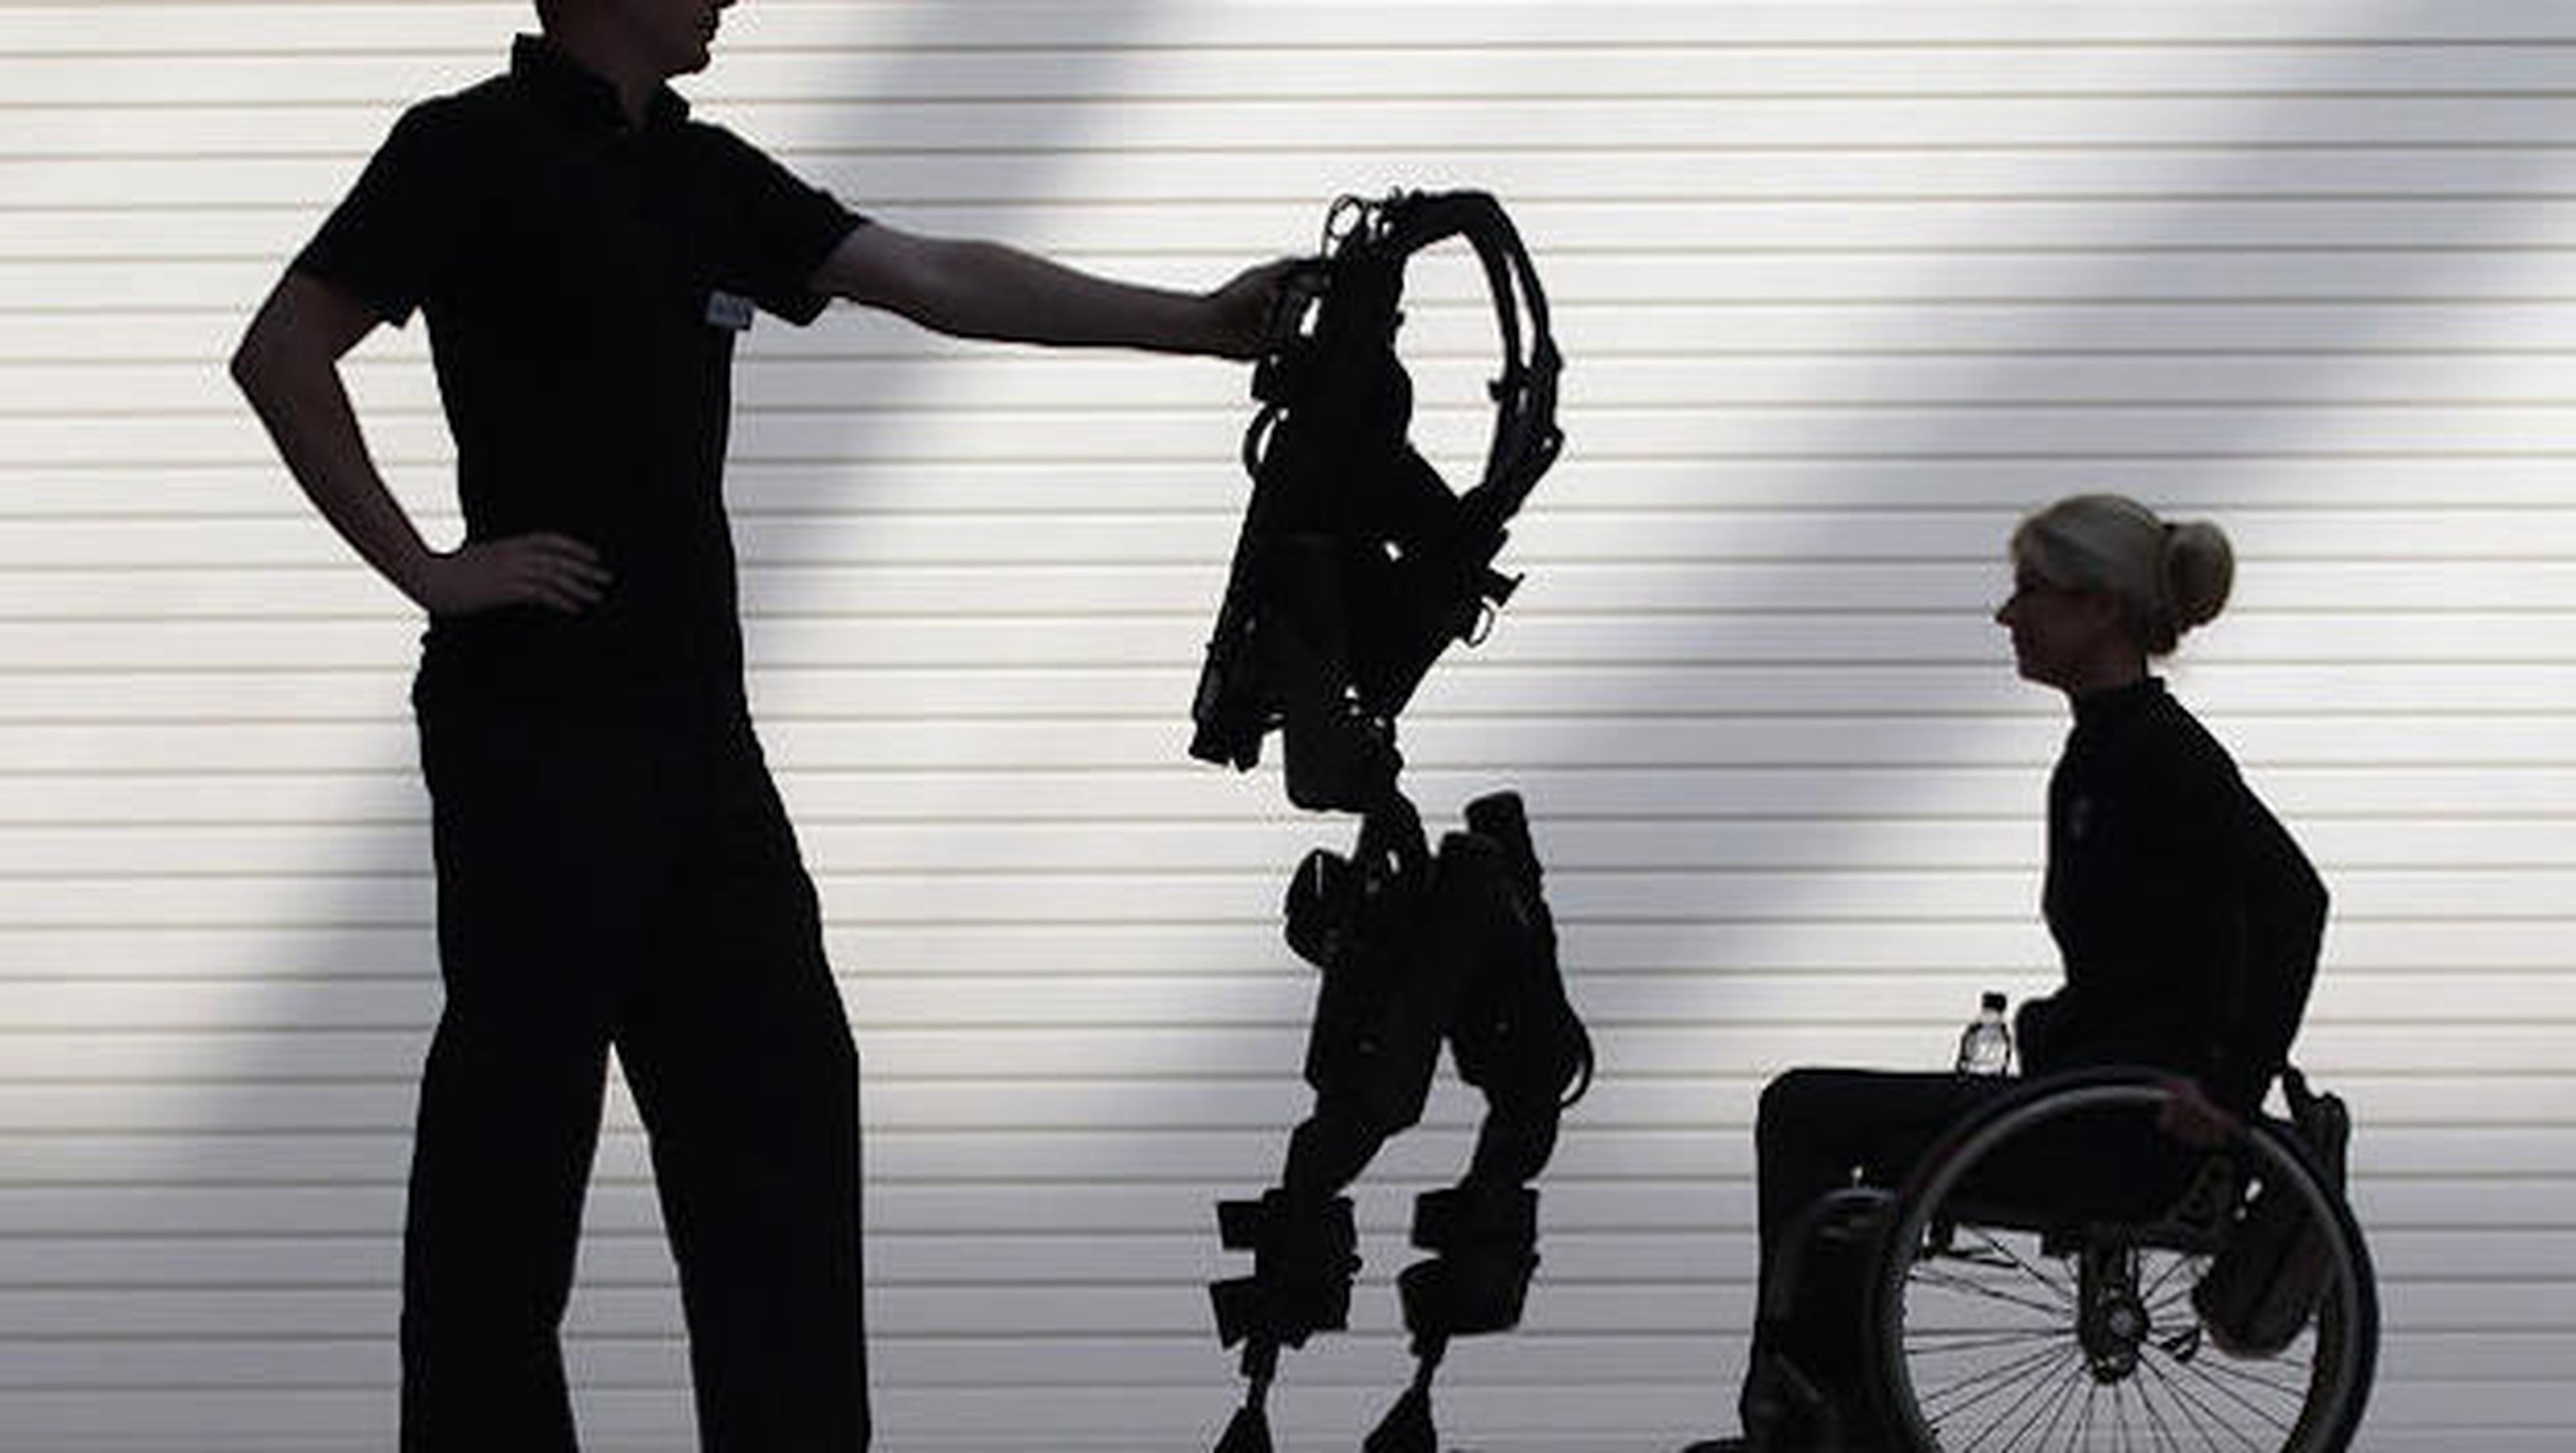 Exoesqueleto impreso en 3D ayuda a mujer a caminar /GETTY IMAGES